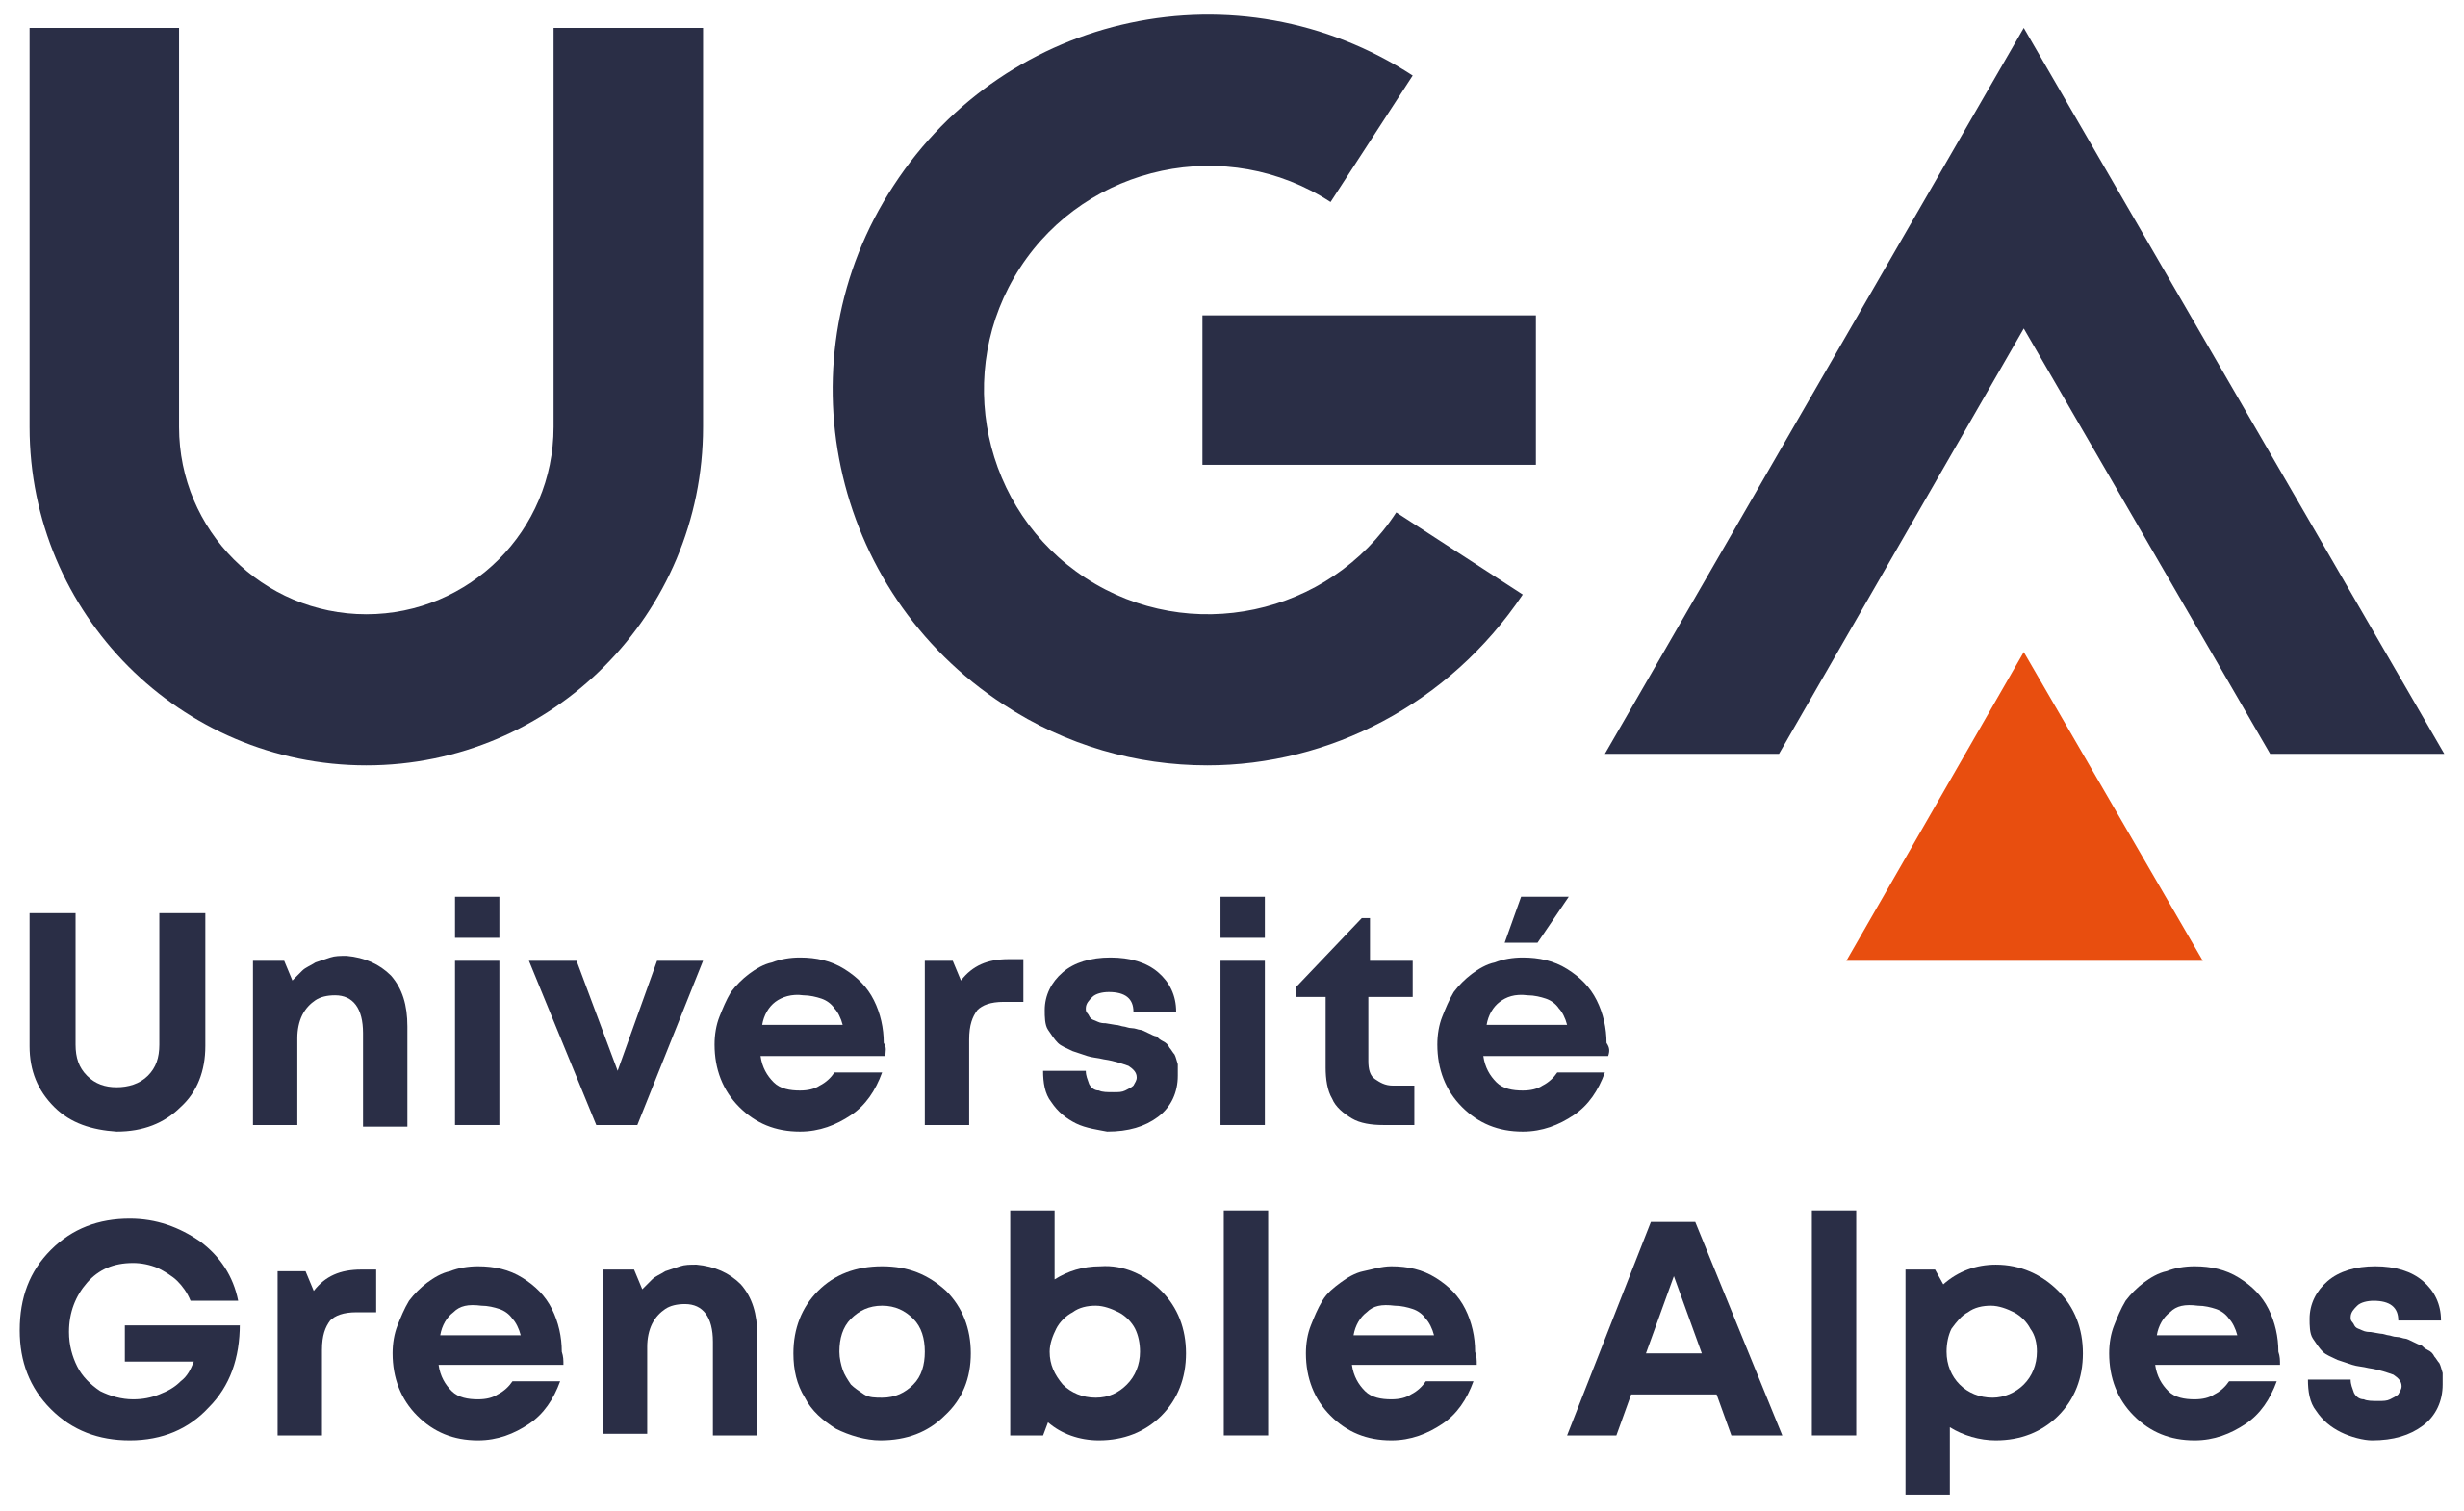 Университет Гренобль Альпы логотип.png